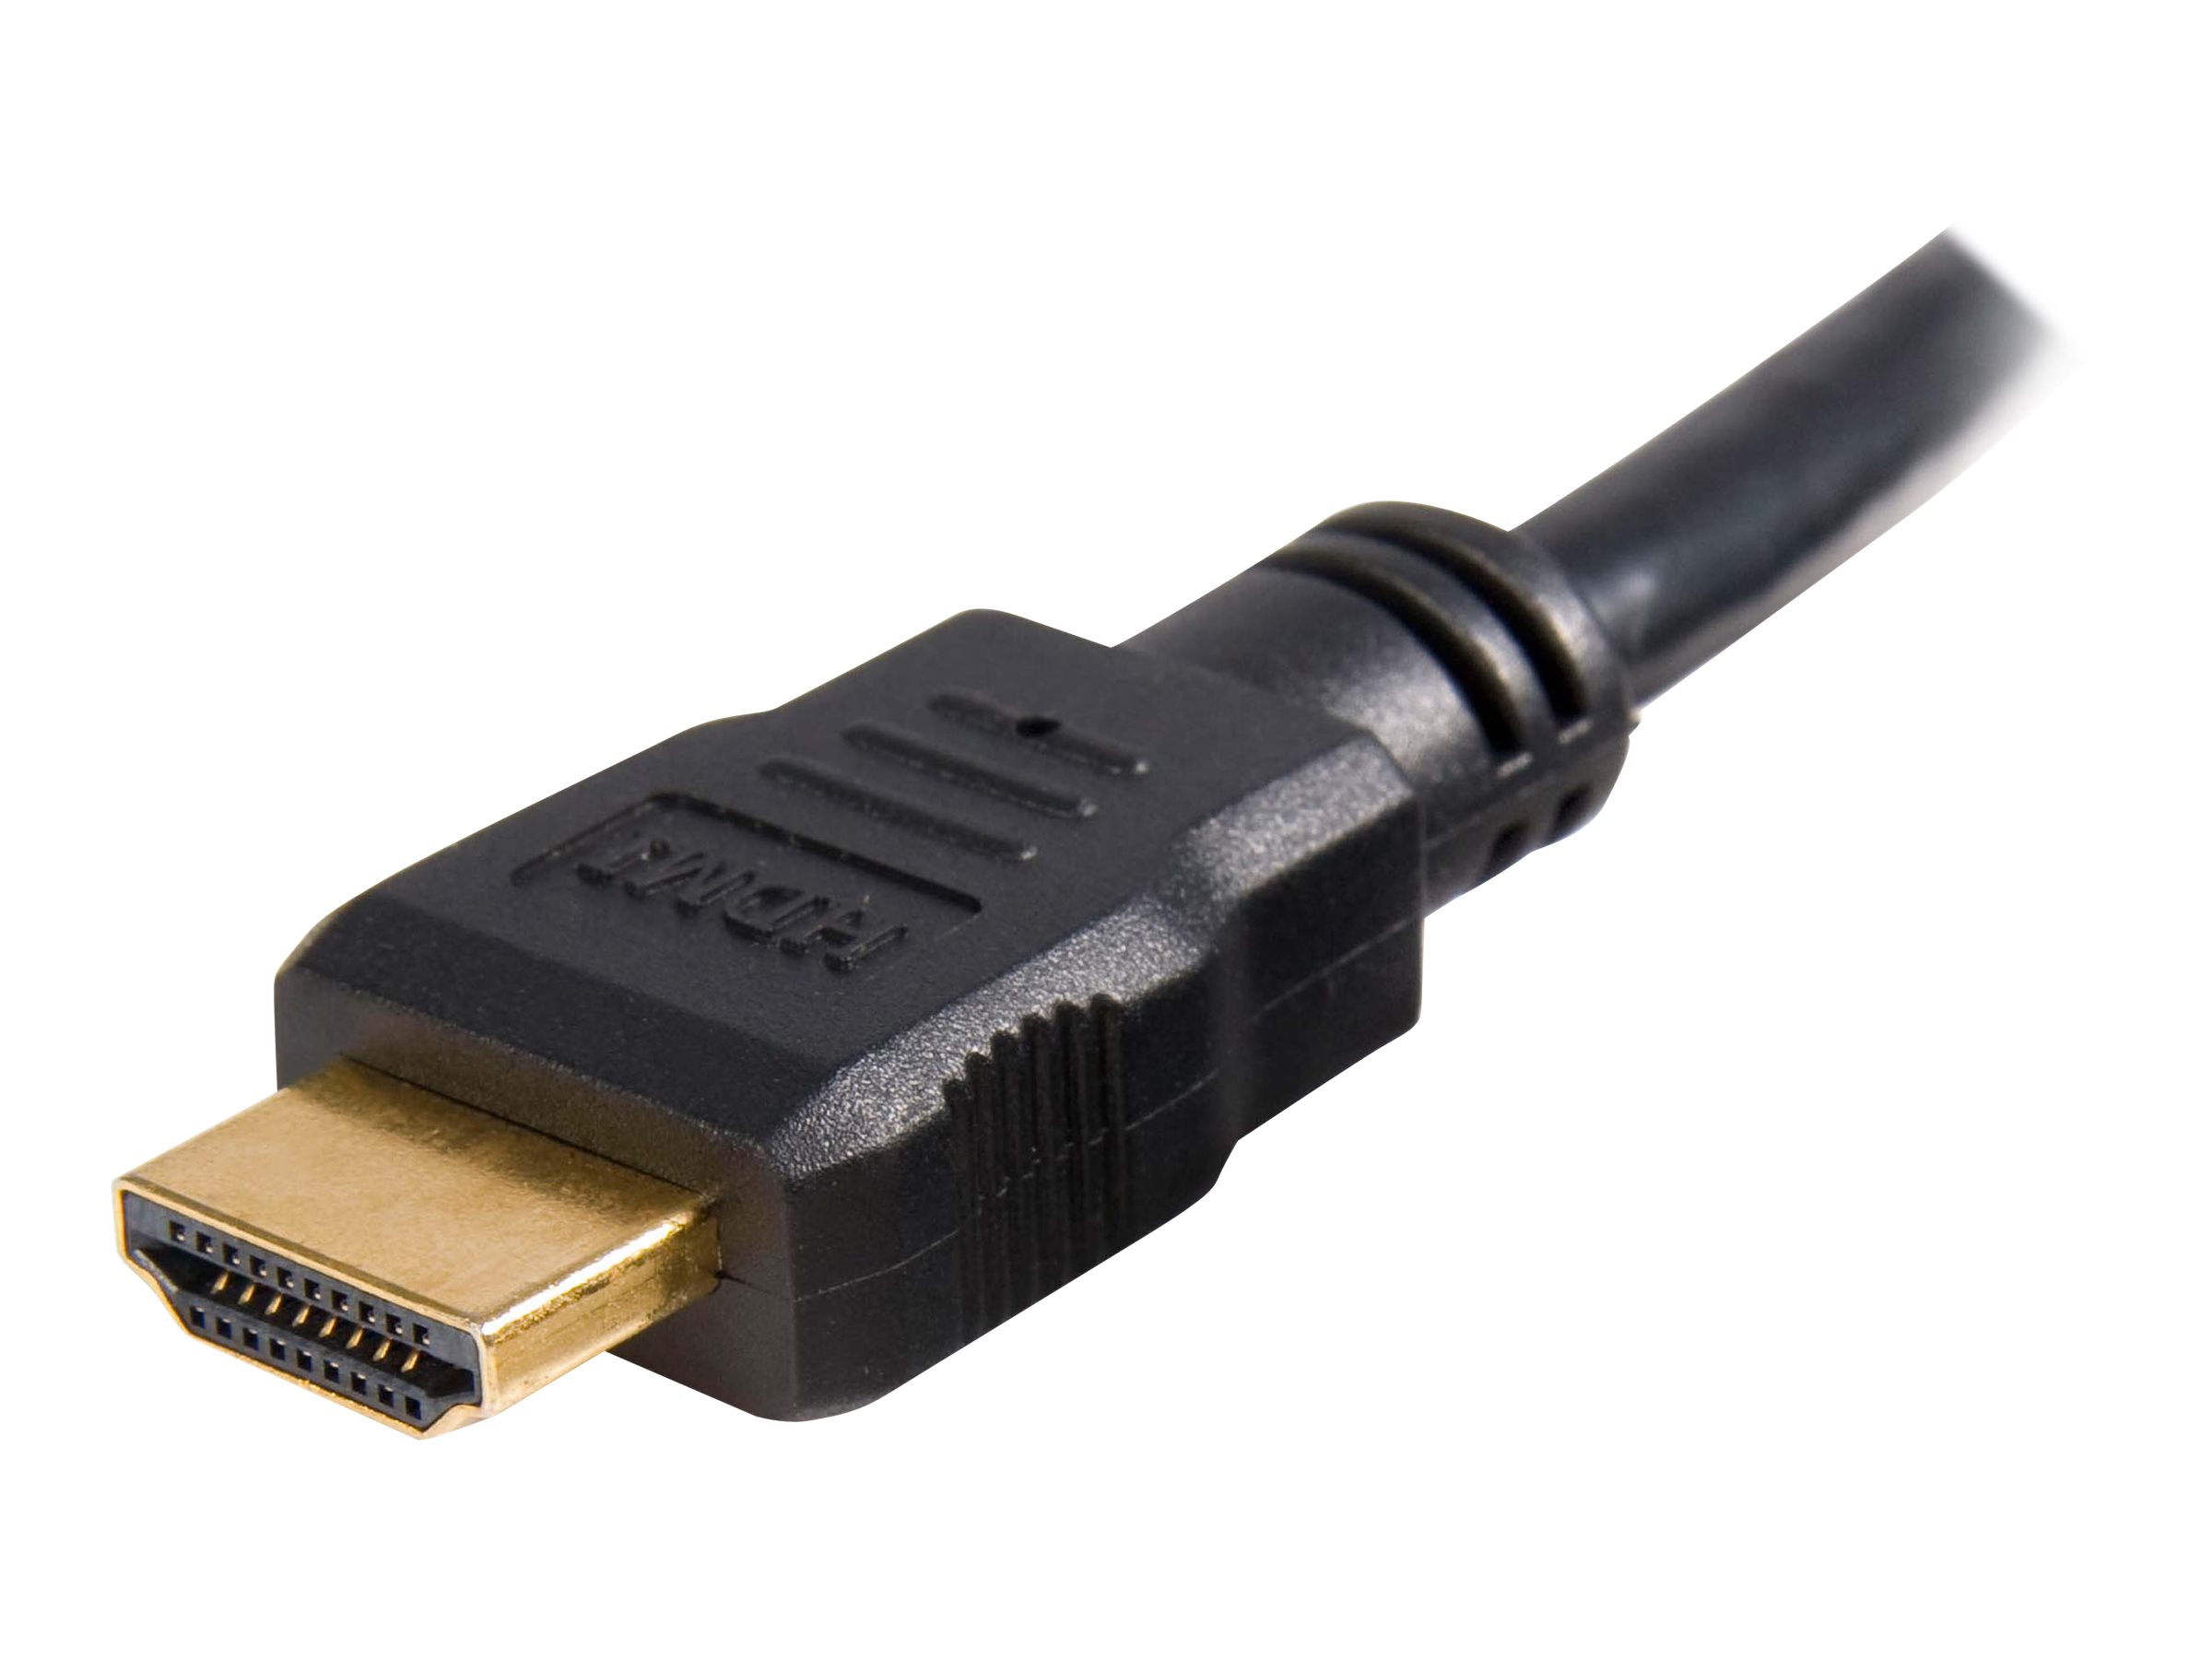 StarTech.com Câble HDMI haute vitesse Ultra HD 4K x 2K de 2m - Cordon HDMI vers HDMI - Mâle / Mâle - Noir - Plaqués or - Câble HDMI - HDMI mâle pour HDMI mâle - 2 m - blindé - noir - pour P/N: CDPVGDVHDBP, DK30CH2DPPDU, DK30CHDPPDUE, DKWG30DPHPD, DKWG30DPHPDU, VHDCI24HD - HDMM2M - Accessoires pour systèmes audio domestiques